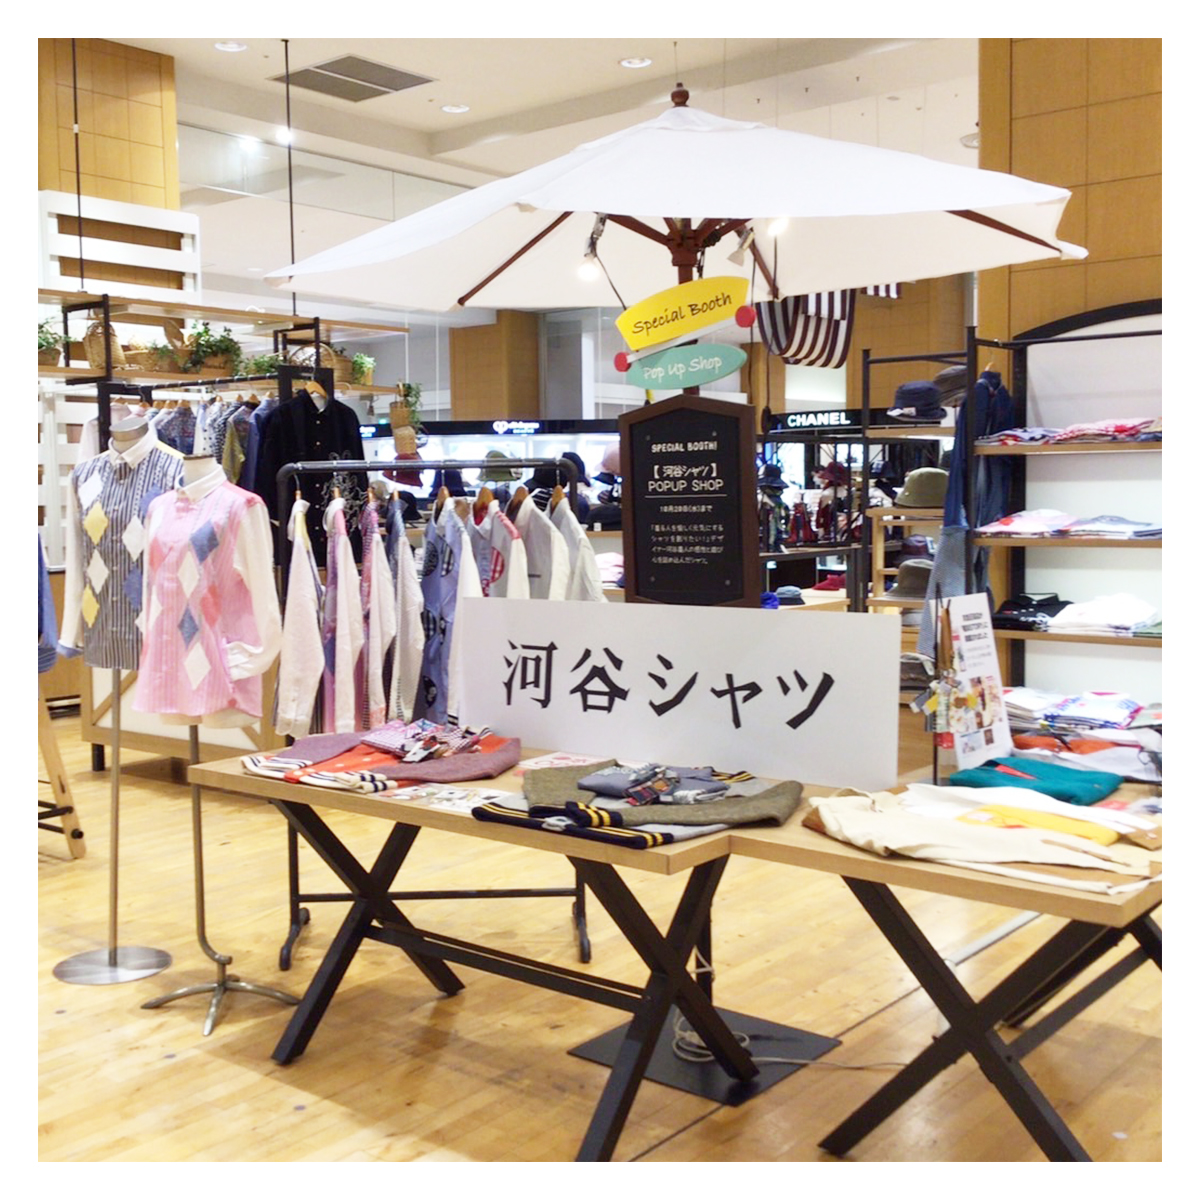 【New】京急百貨店・上大岡駅にPOPUPSHOPがオープンしました♪